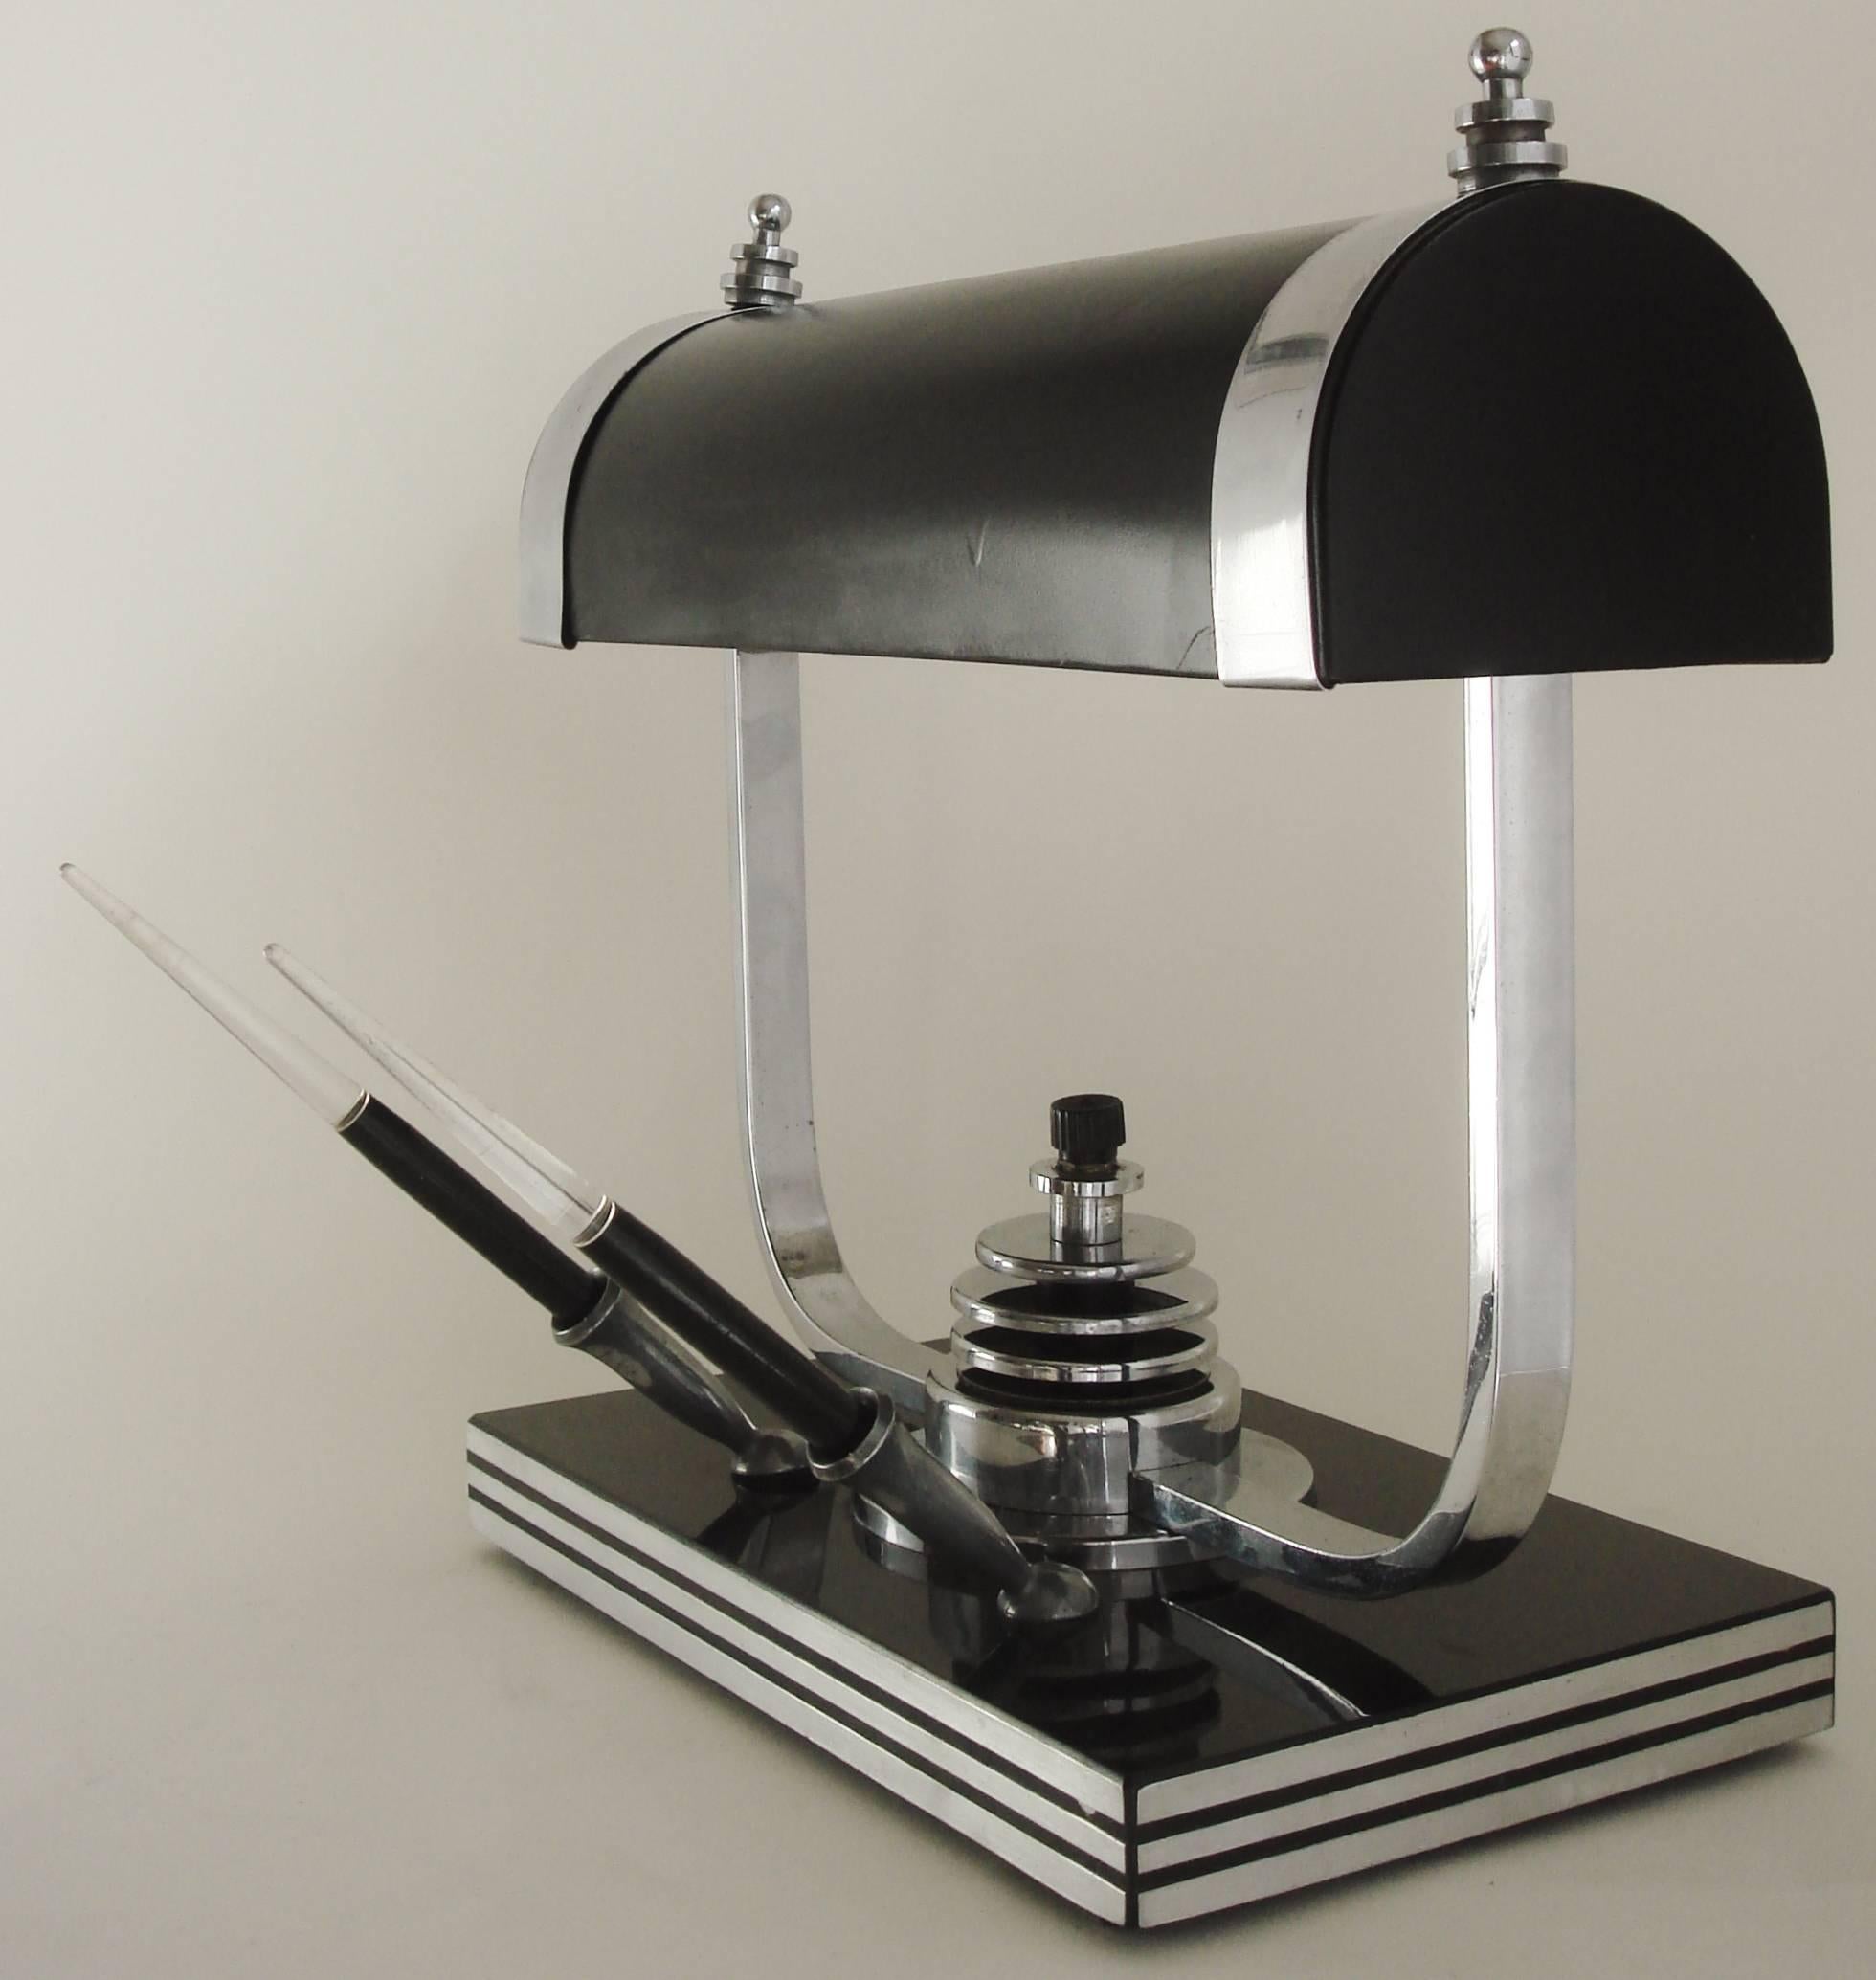 American Art Deco Black Enamel, Bakelite & Chrome Twin Pen Desk Lamp by Markel. 1